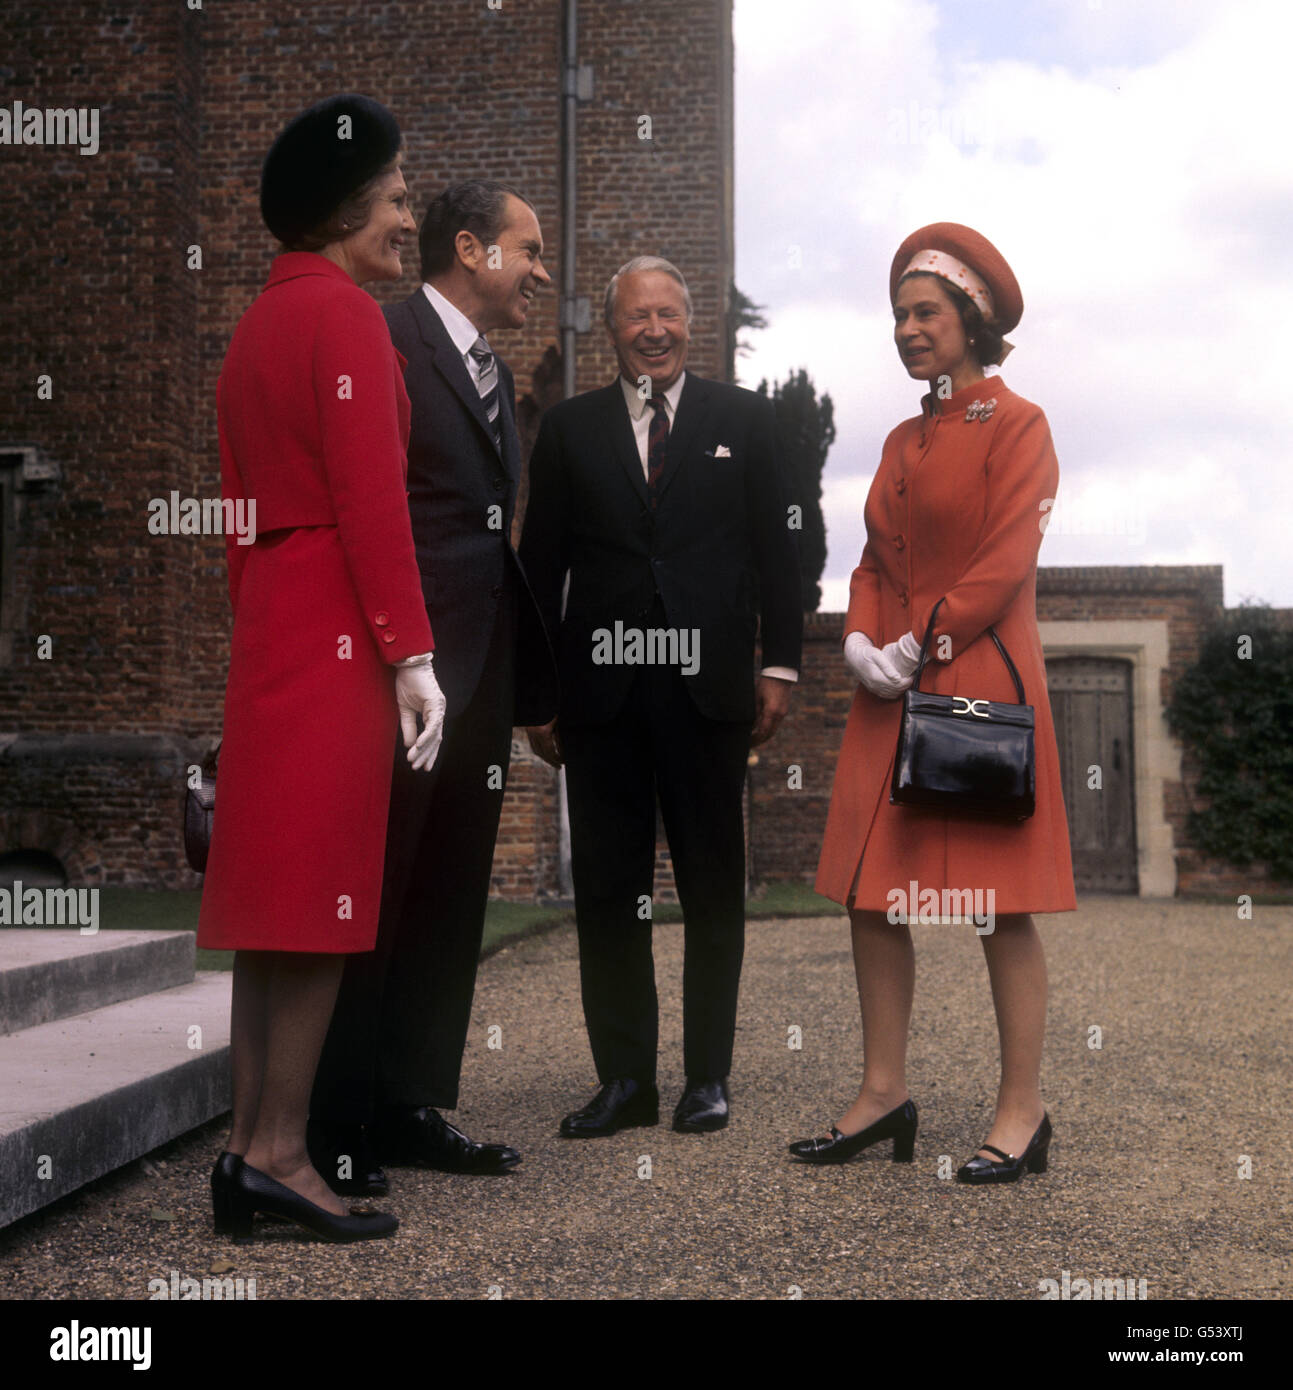 Königin Elizabeth II. Mit Premierminister Edward Heath und dem amerikanischen Präsidenten Richard Nixon und seiner Frau Pat Nixon in Chequers, der offiziellen Landresidenz des Premierministers in Buckinghamshire. Stockfoto